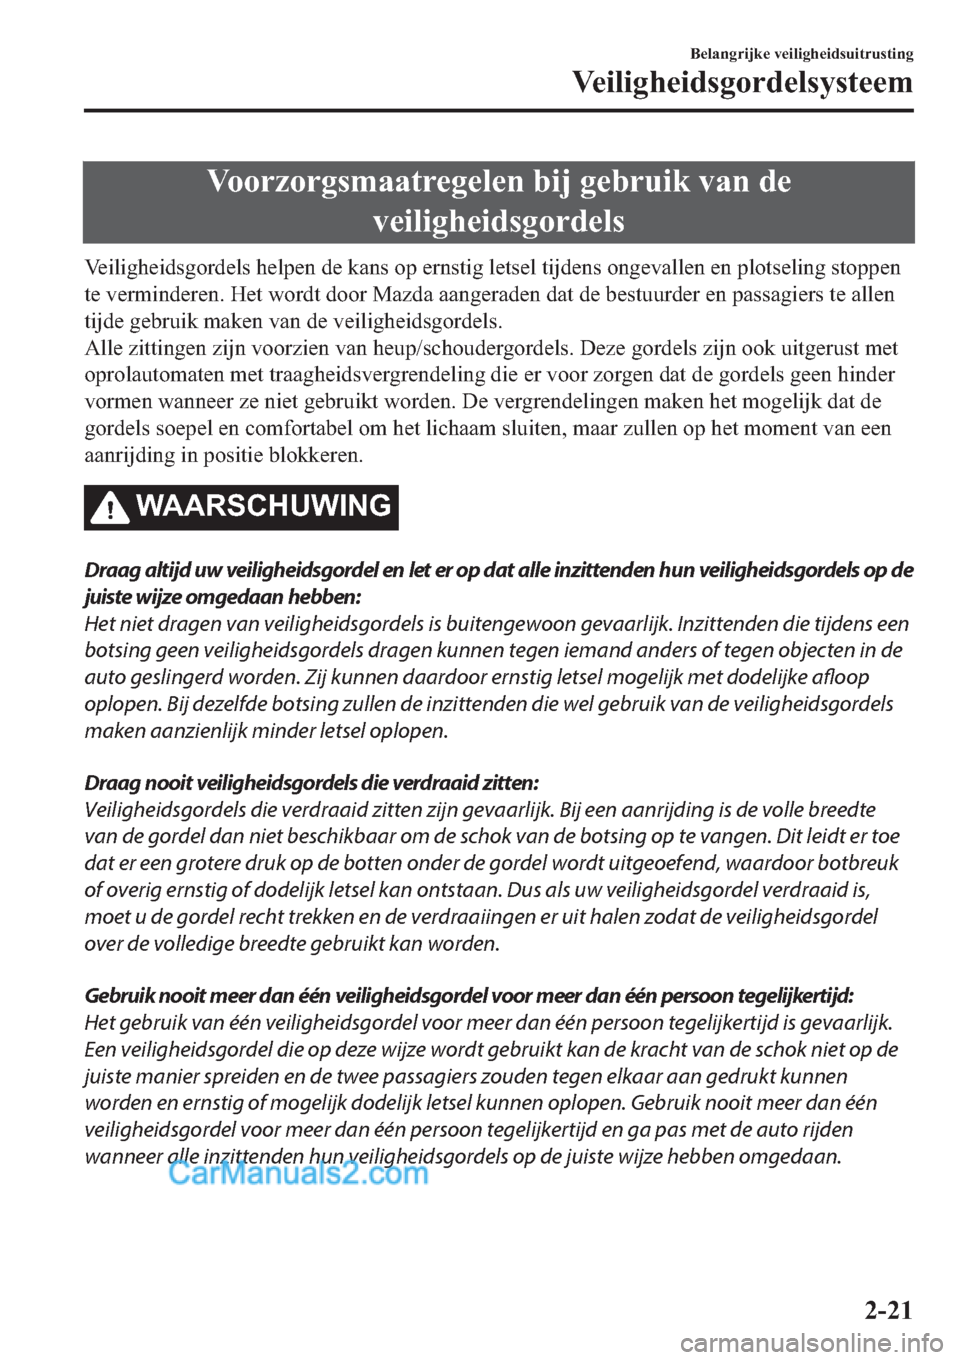 MAZDA MODEL 2 2019  Handleiding (in Dutch) �9�R�R�U�]�R�U�J�V�P�D�D�W�U�H�J�H�O�H�Q��E�L�M��J�H�E�U�X�L�N��Y�D�Q��G�H
�Y�H�L�O�L�J�K�H�L�G�V�J�R�U�G�H�O�V
�9�H�L�O�L�J�K�H�L�G�V�J�R�U�G�H�O�V��K�H�O�S�H�Q��G�H��N�D�Q�V��R�S��H�U�Q�V�W